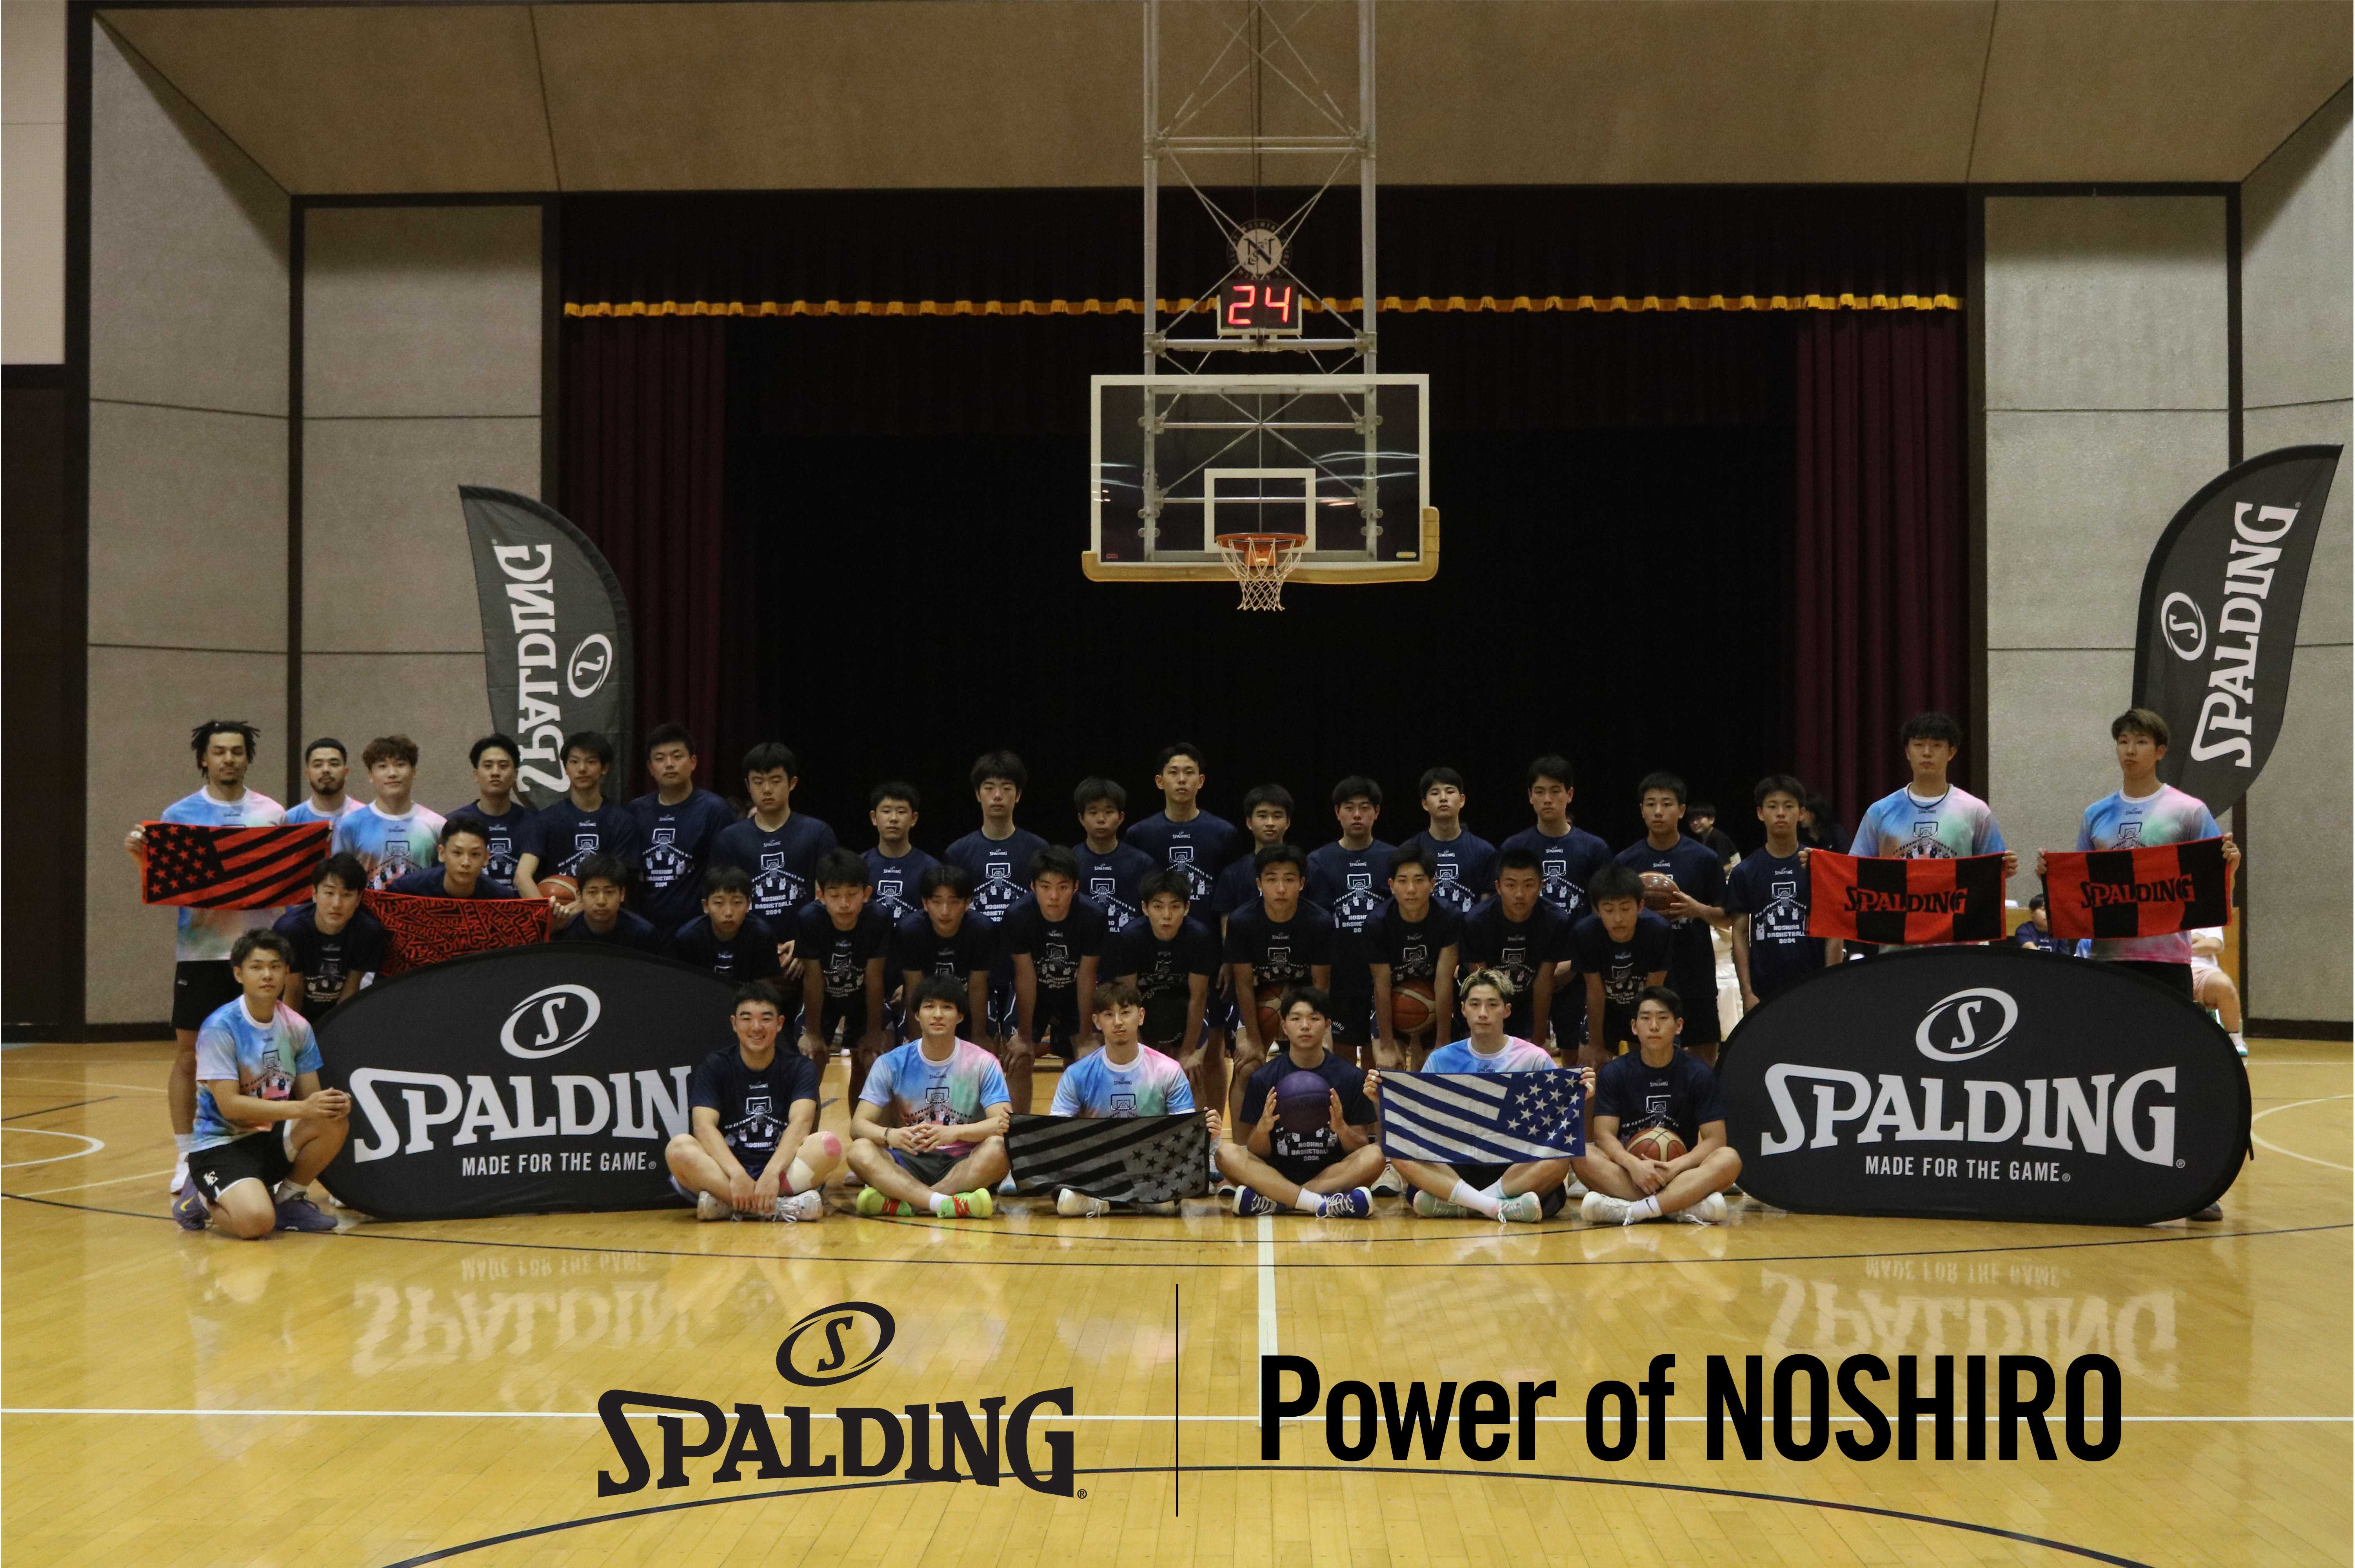 スポルディング、バスケの街 能代にてバスケイベント『Power of NOSHIRO』へ協賛
能代科学技術高校バスケットボール部が高校OBのプロ選手と強化試合を実施